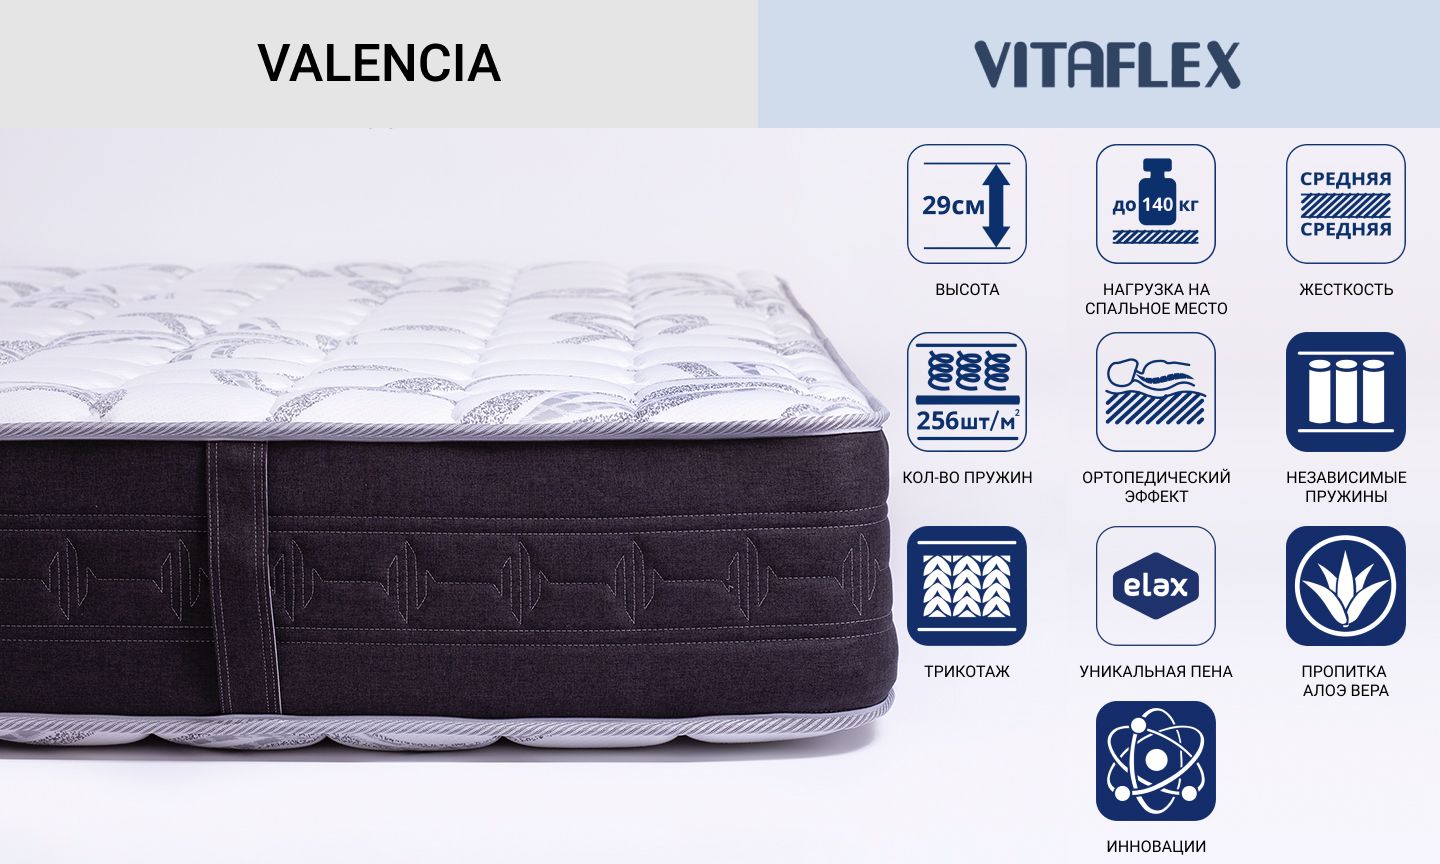 Двухсторонний матрас Vitaflex серии Valencia с независимыми пружинами